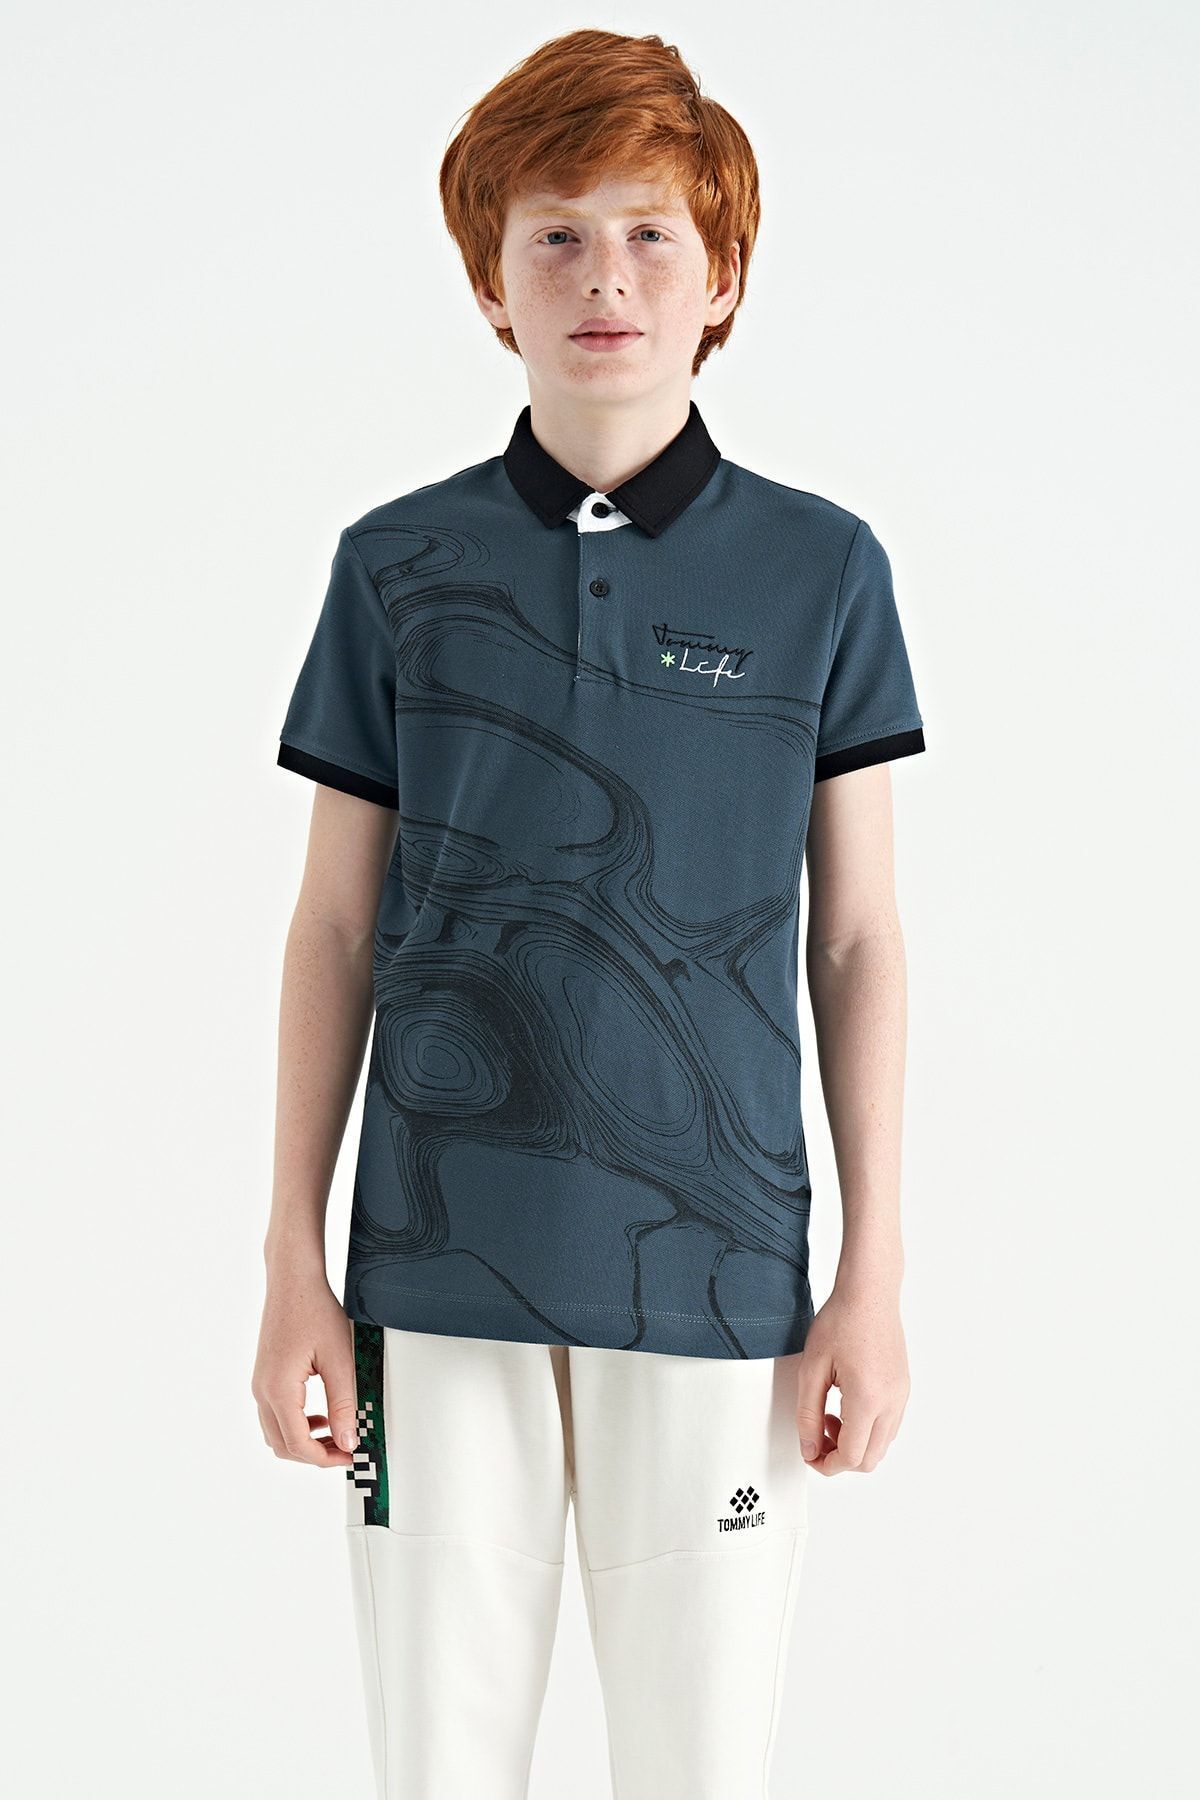 TOMMY LIFE Orman Yeşili Baskı Detaylı Standart Kalıp Polo Yaka Erkek Çocuk T-Shirt - 11165